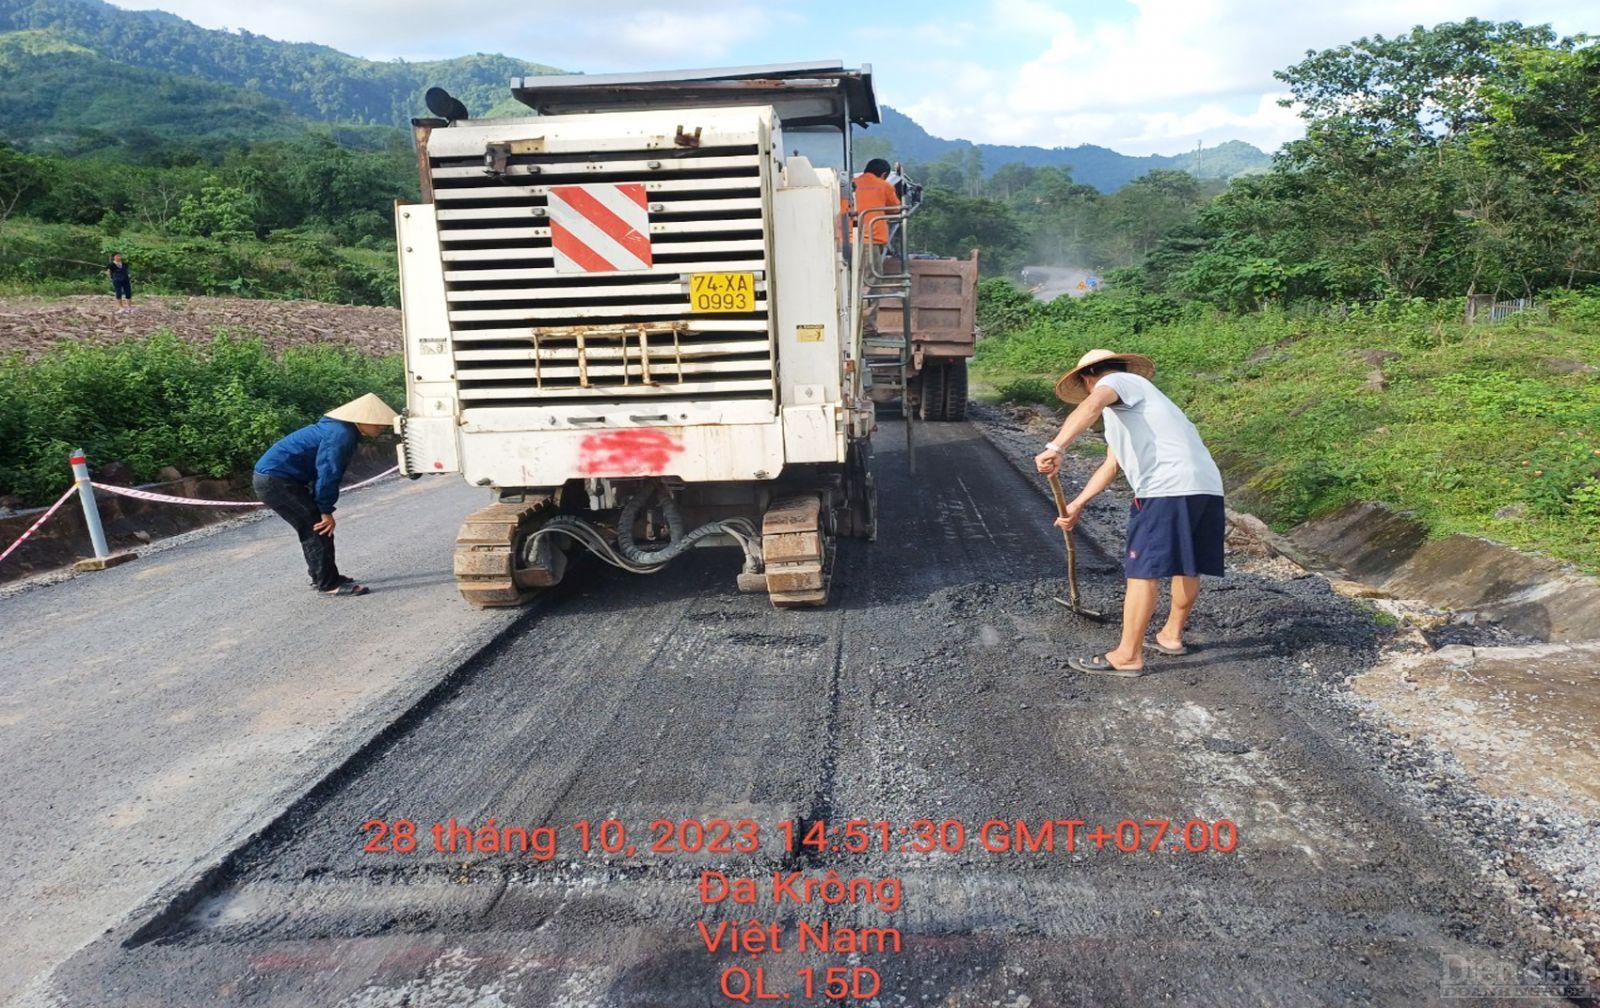 Sau loạt bài phản ánh của Diễn đàn Doanh nghiệp, Công ty một thành viên An Nhất Sinh buộc phải tiến hành cào bóc lớp bê tông nhựa theo yêu cầu của Sở GTVT tỉnh Quảng Trị